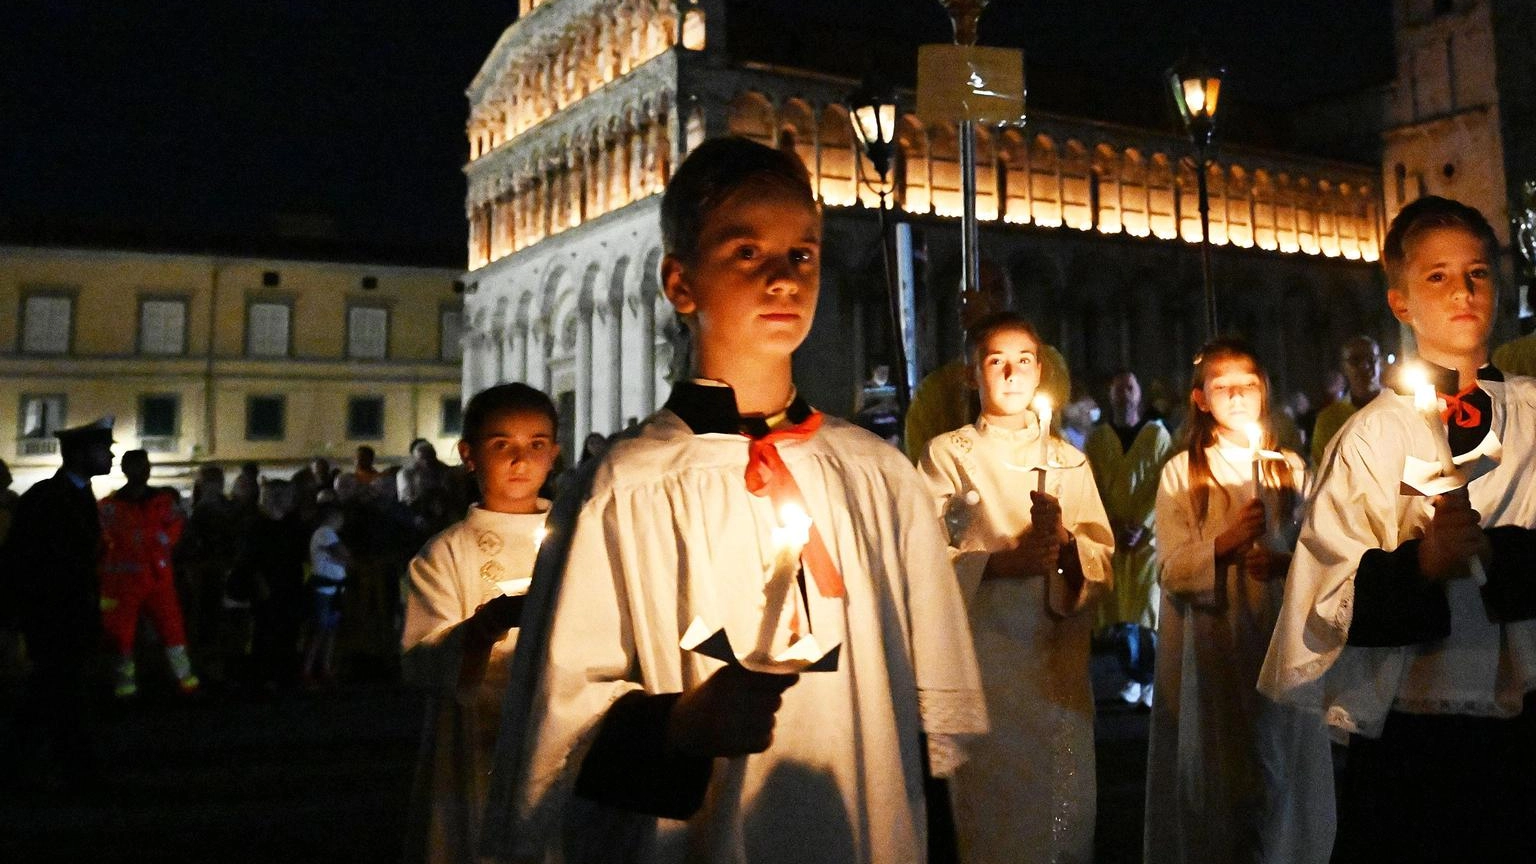 

Scatta l’appello a Lucca: “Spegnete luci e vetrine” per la Luminara